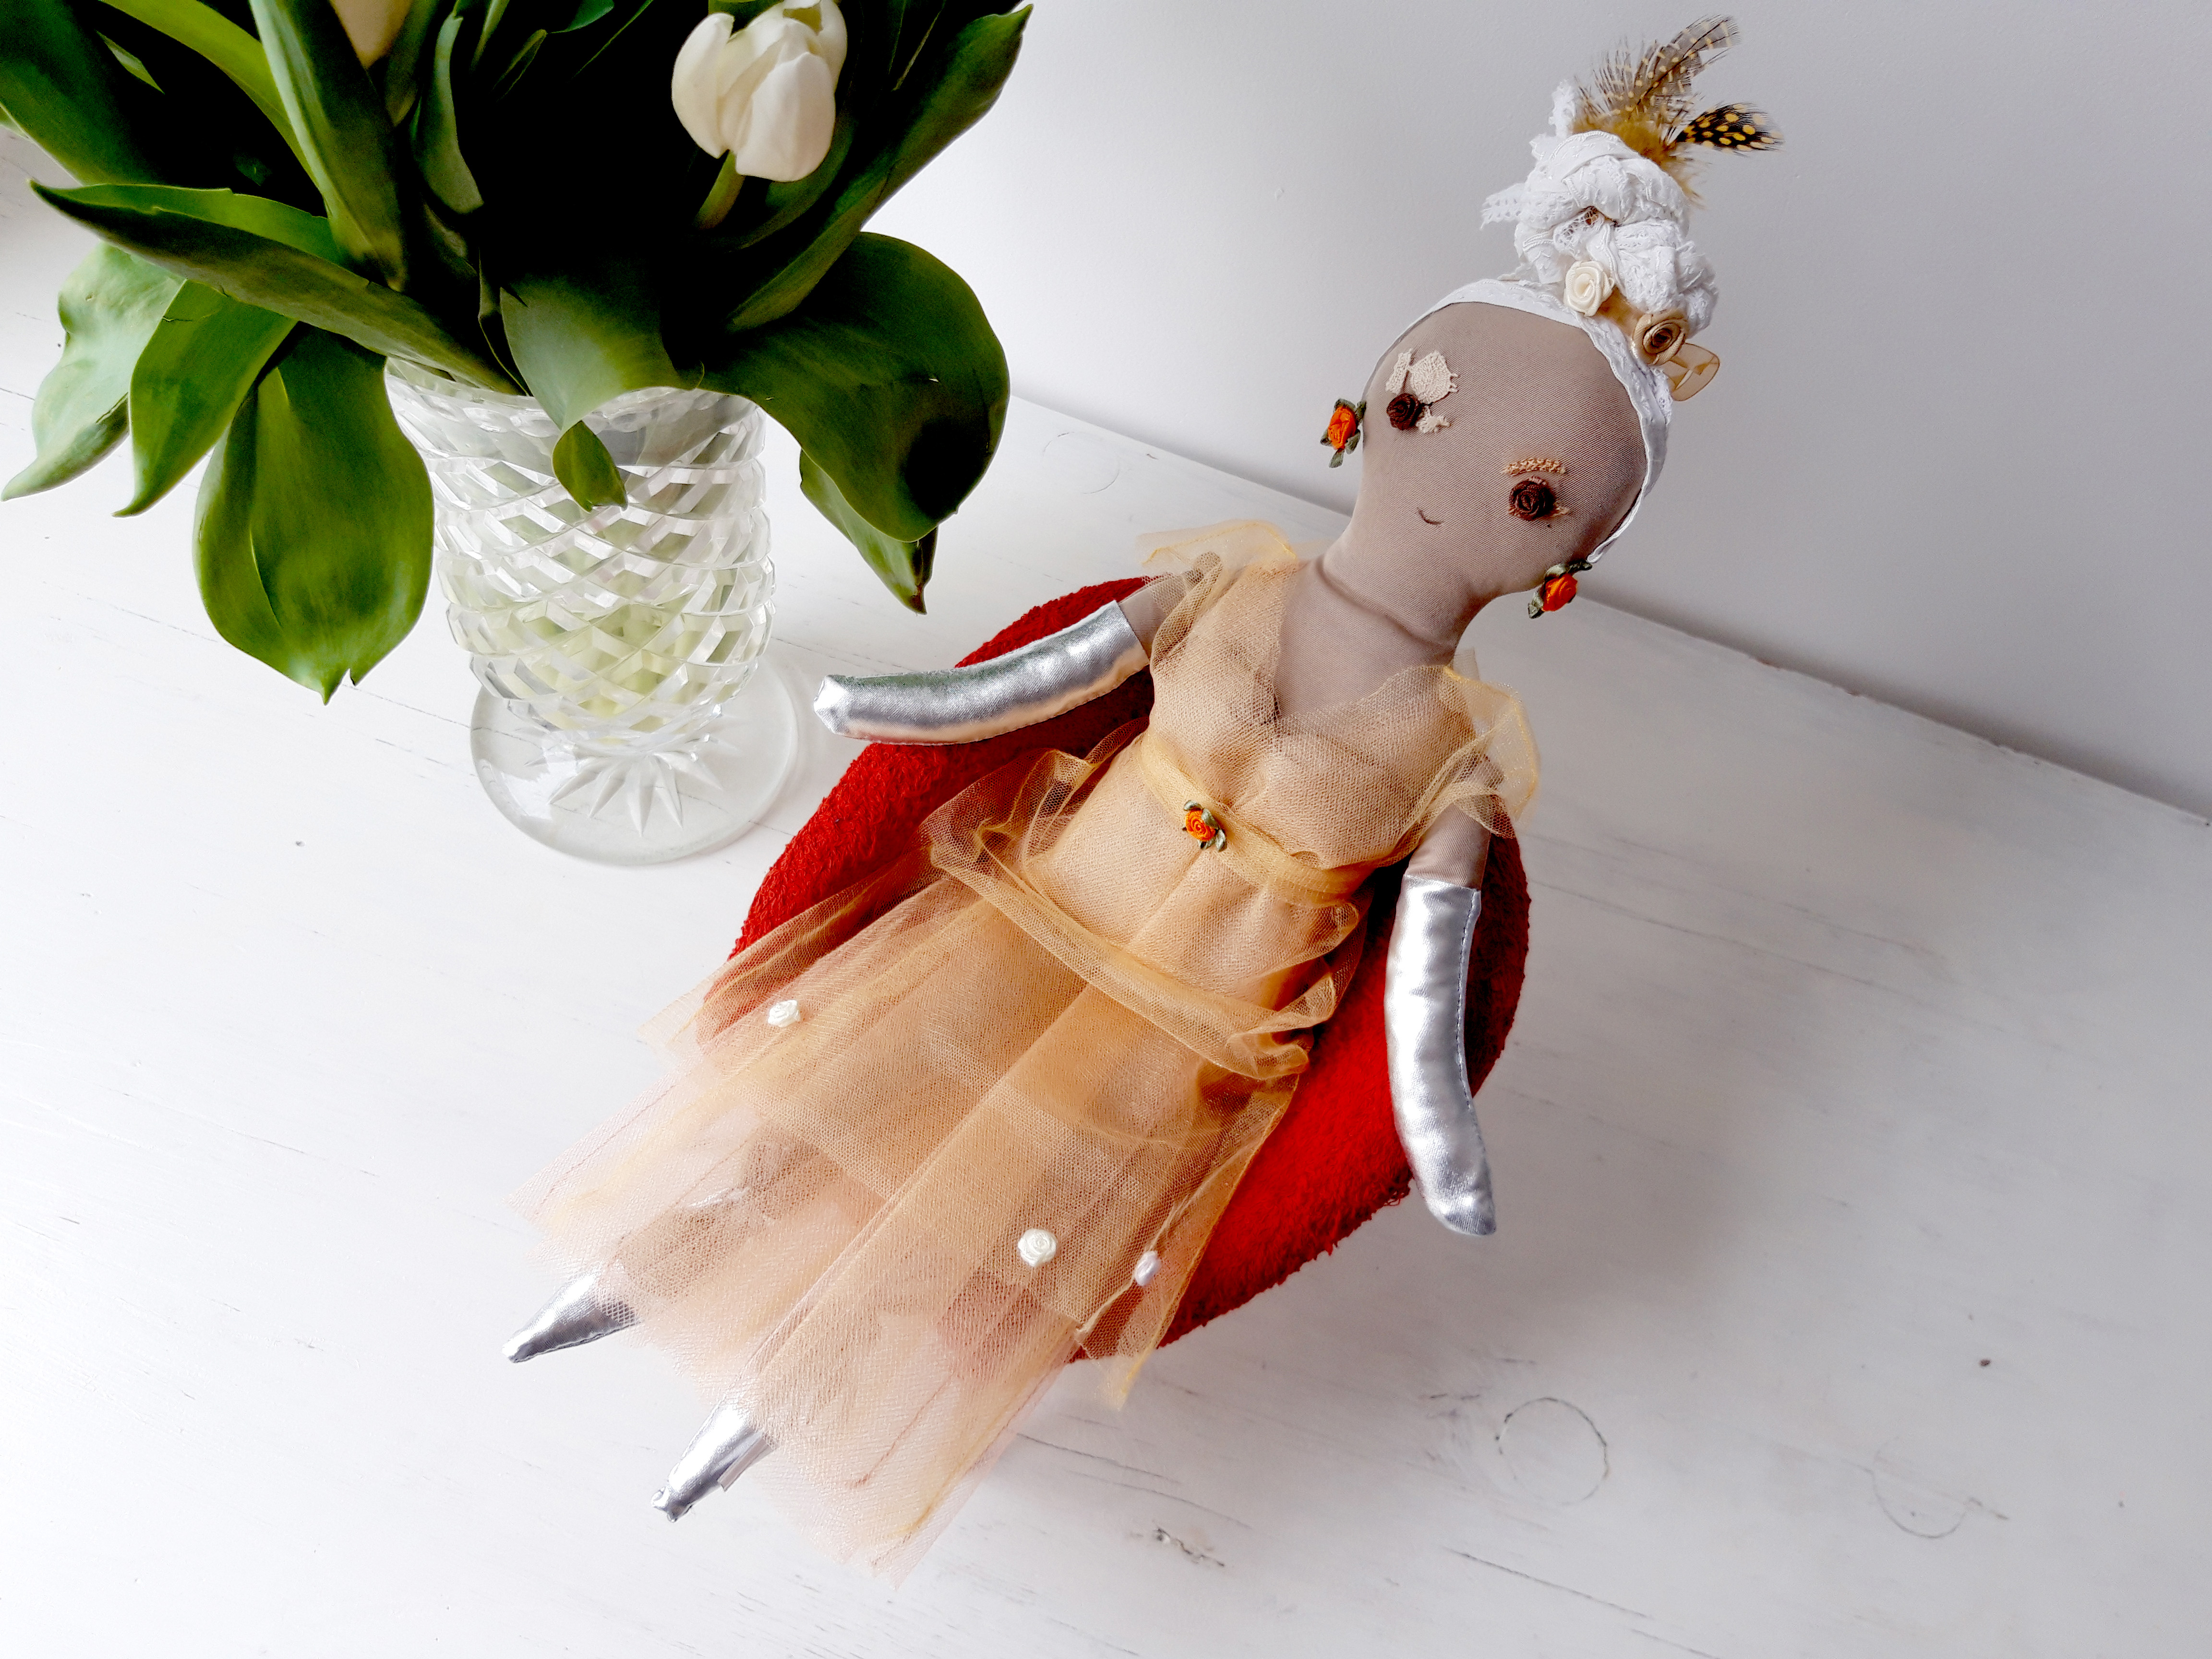 Zdjęcie przedstawia lalkę szmacianą w balowej sukni, siedzącą na foteliku dla lalek. Scena pokazana jest na białym tle. Fotelik jest koloru czerwonego. Lalka pokazana jest w pełnej postaci, en face, nieco z góry. Jest ubrana w balową suknię z tiulu w kolorze morelowym, długą do ziemi. Z lewej strony lalki, obok jej fotelika widzimy kryształowy wazon z białymi tulipanami. Białe pąki tulipanów odcinają się kontrastowo od zielonych liści.